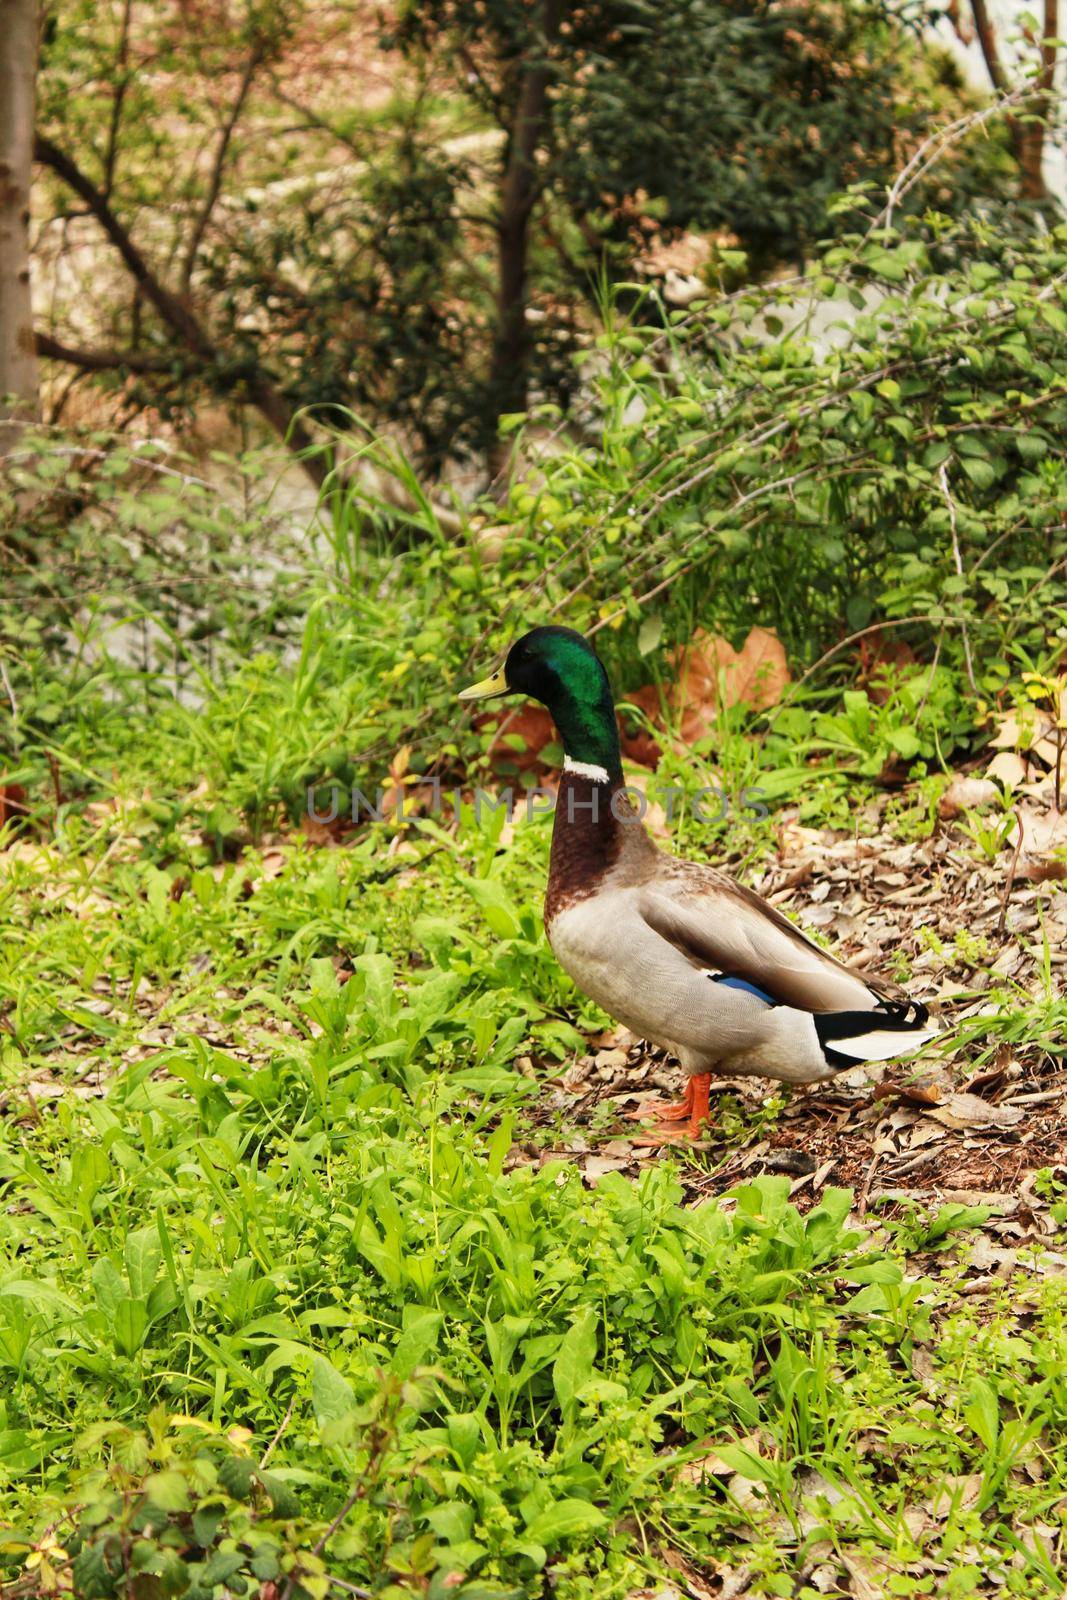 Ducks in the garden pond by soniabonet